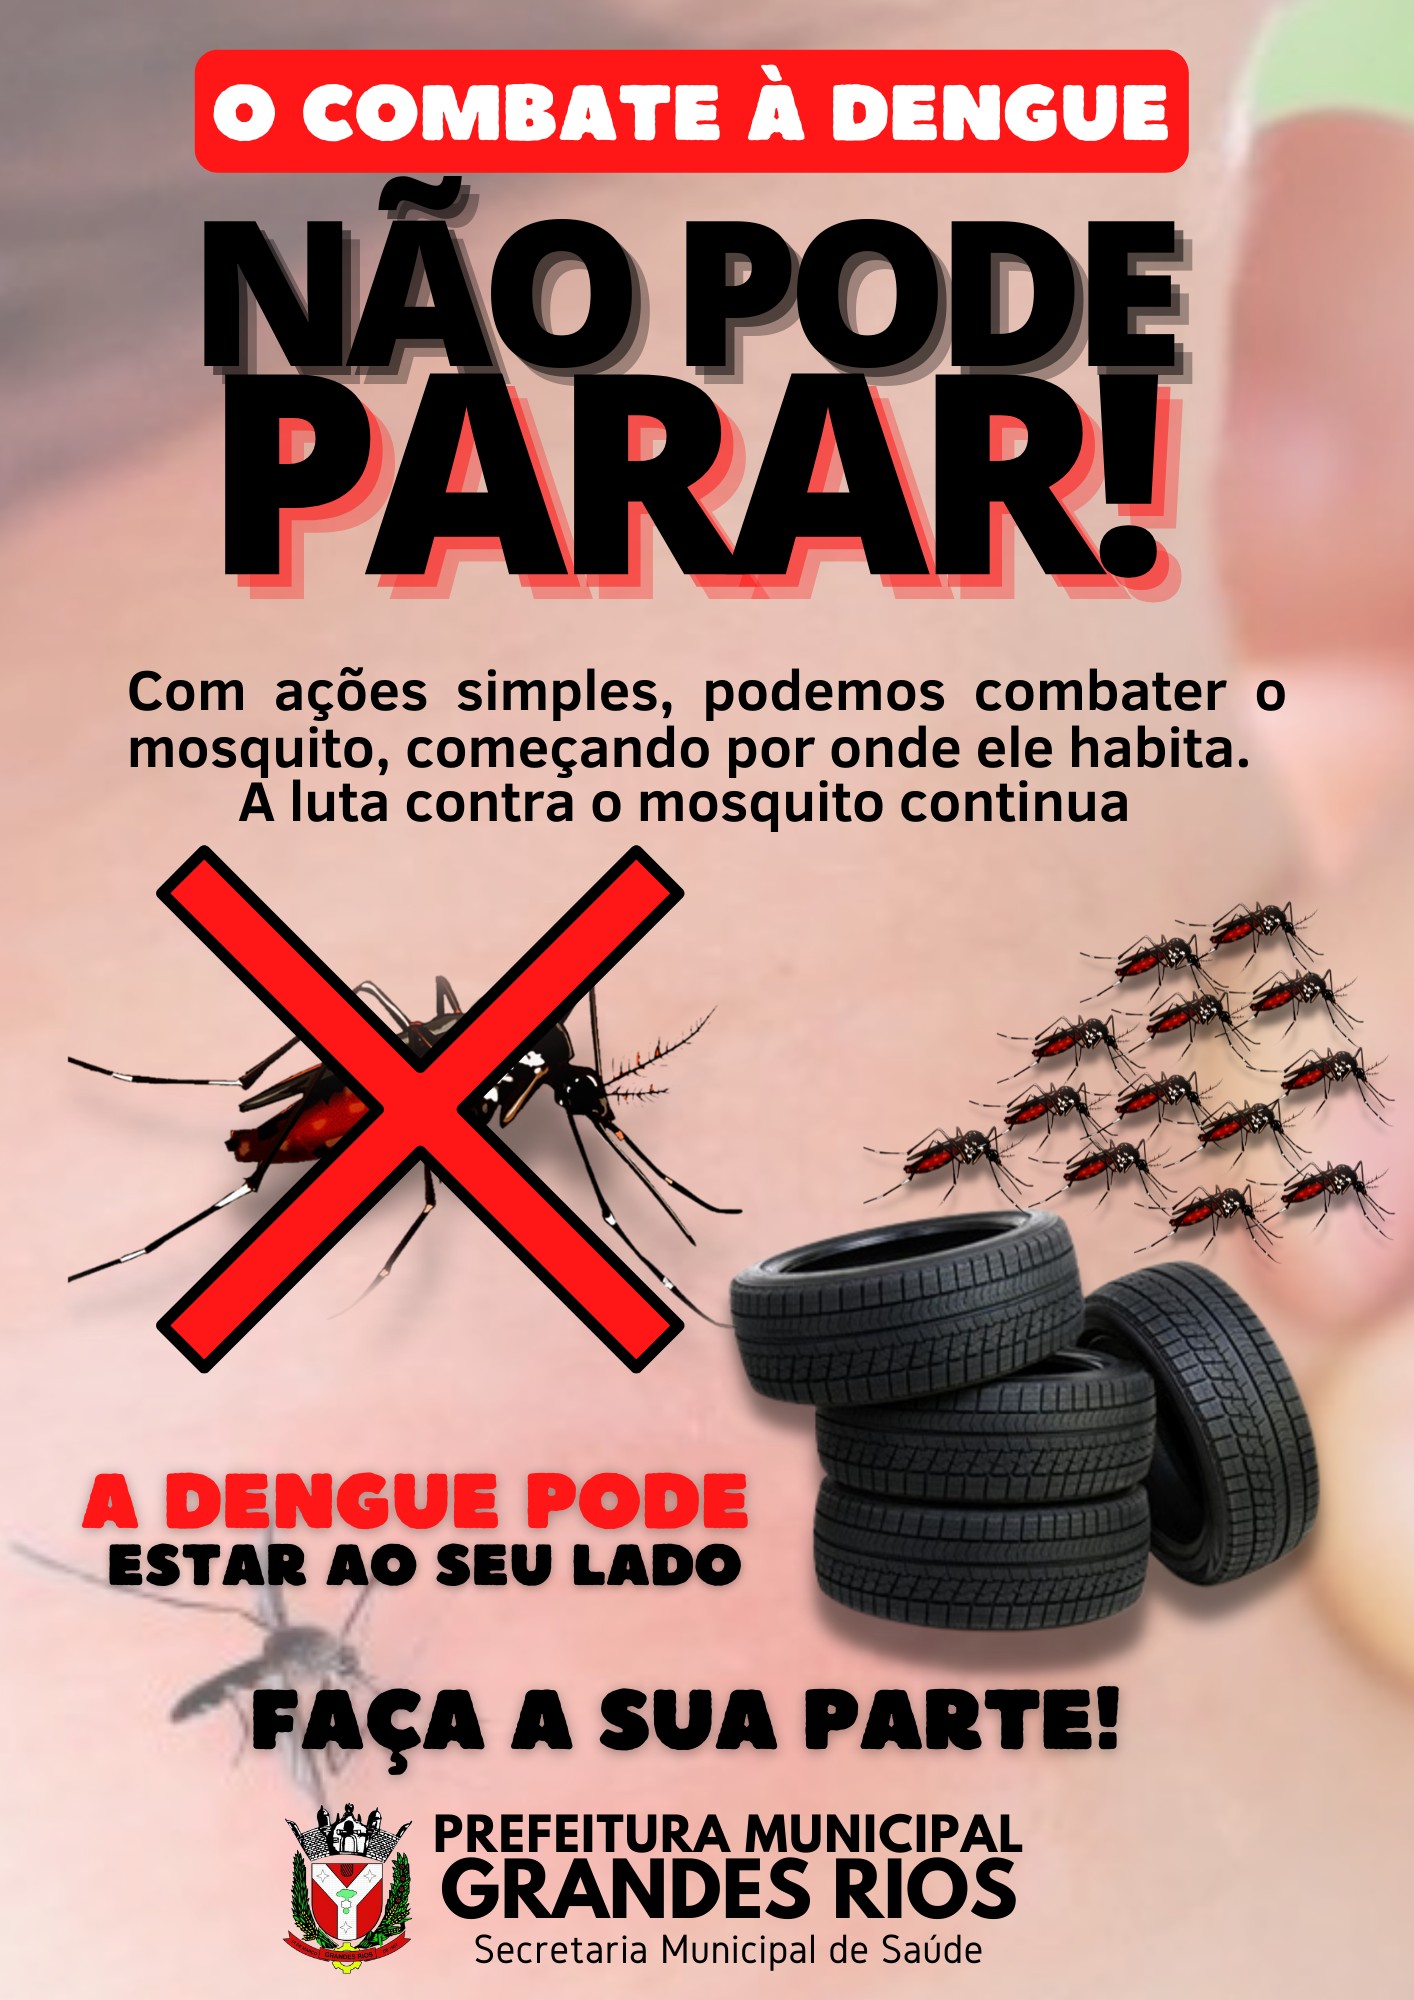 GRANDES RIOS - O Combate à Dengue não pode parar